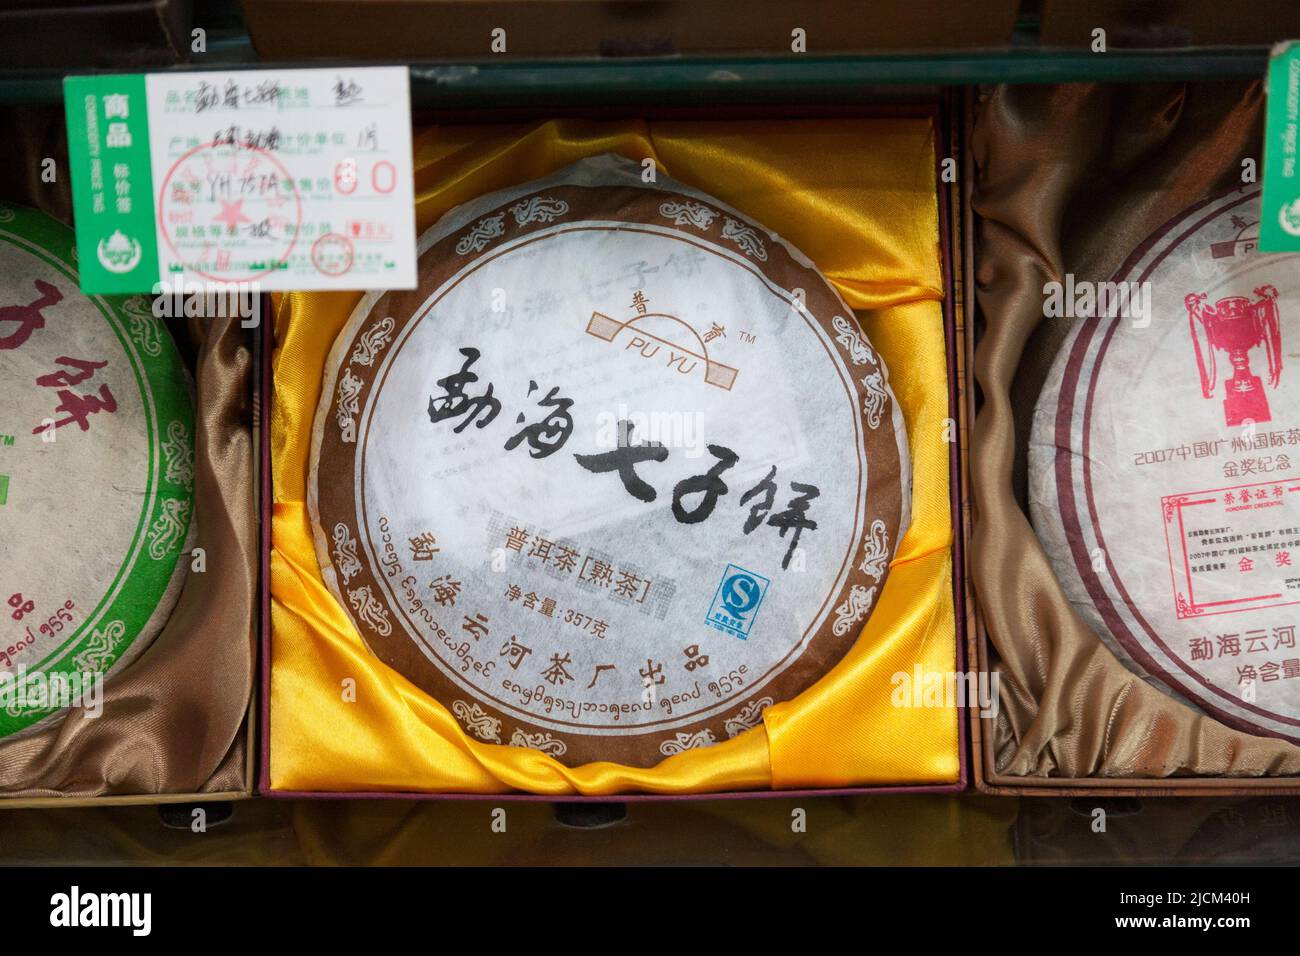 Présentation de thé qui est décrit comme du thé pur cuit / cuit au four, comprimé dans un gâteau plutôt que d'être vendu comme feuilles de thé. Xi'an. PRC. Chine. (125) Banque D'Images